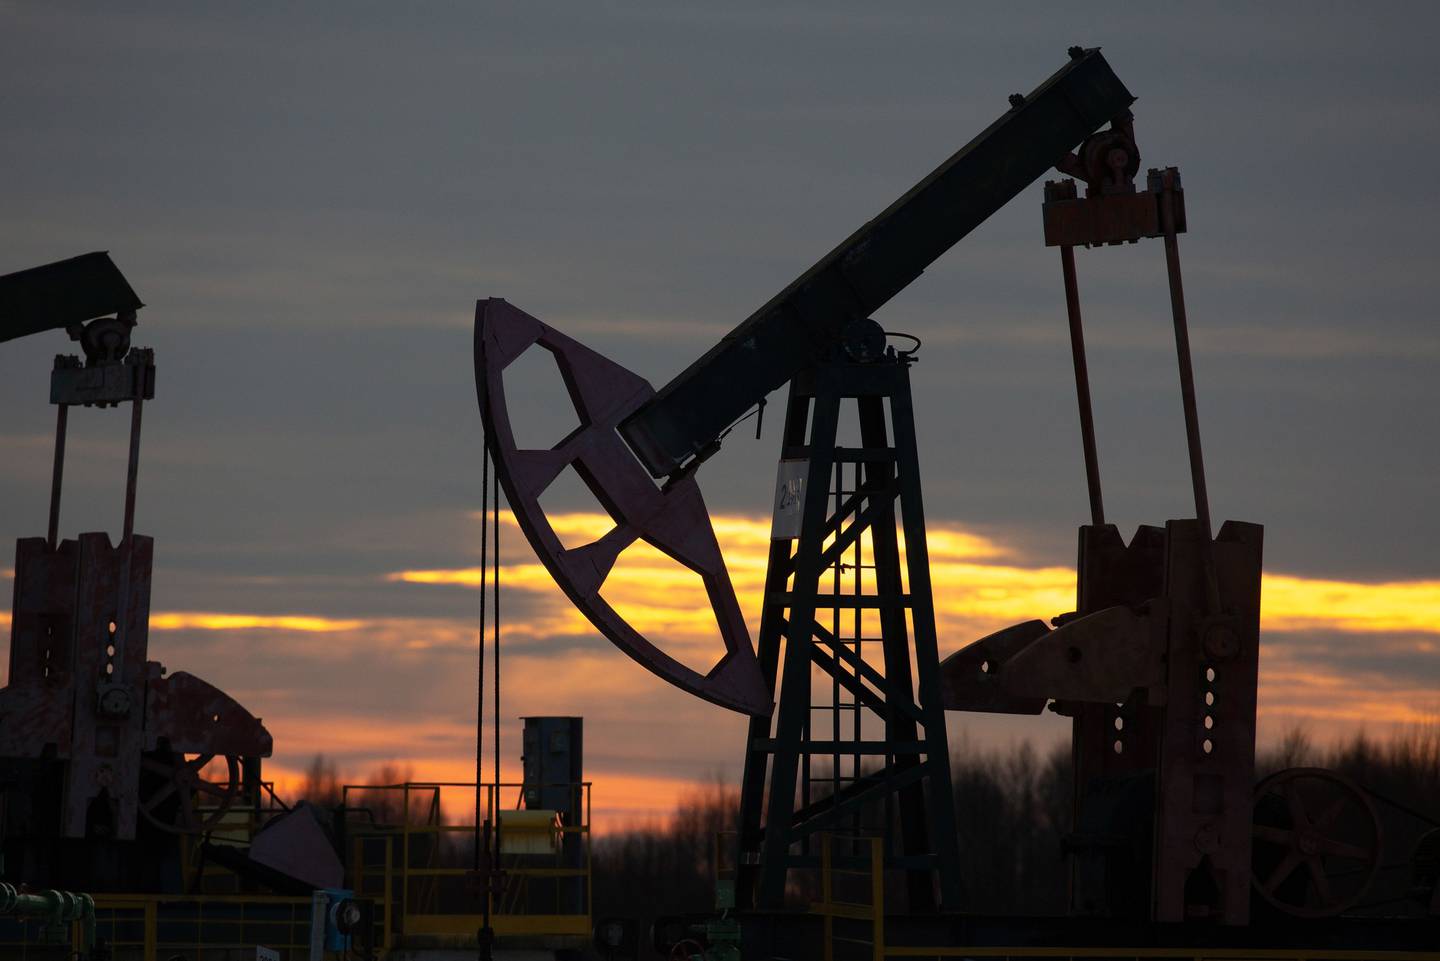 Fondos especulativos apuestan al petróleo ante el temor a una recesión en EE.UU.